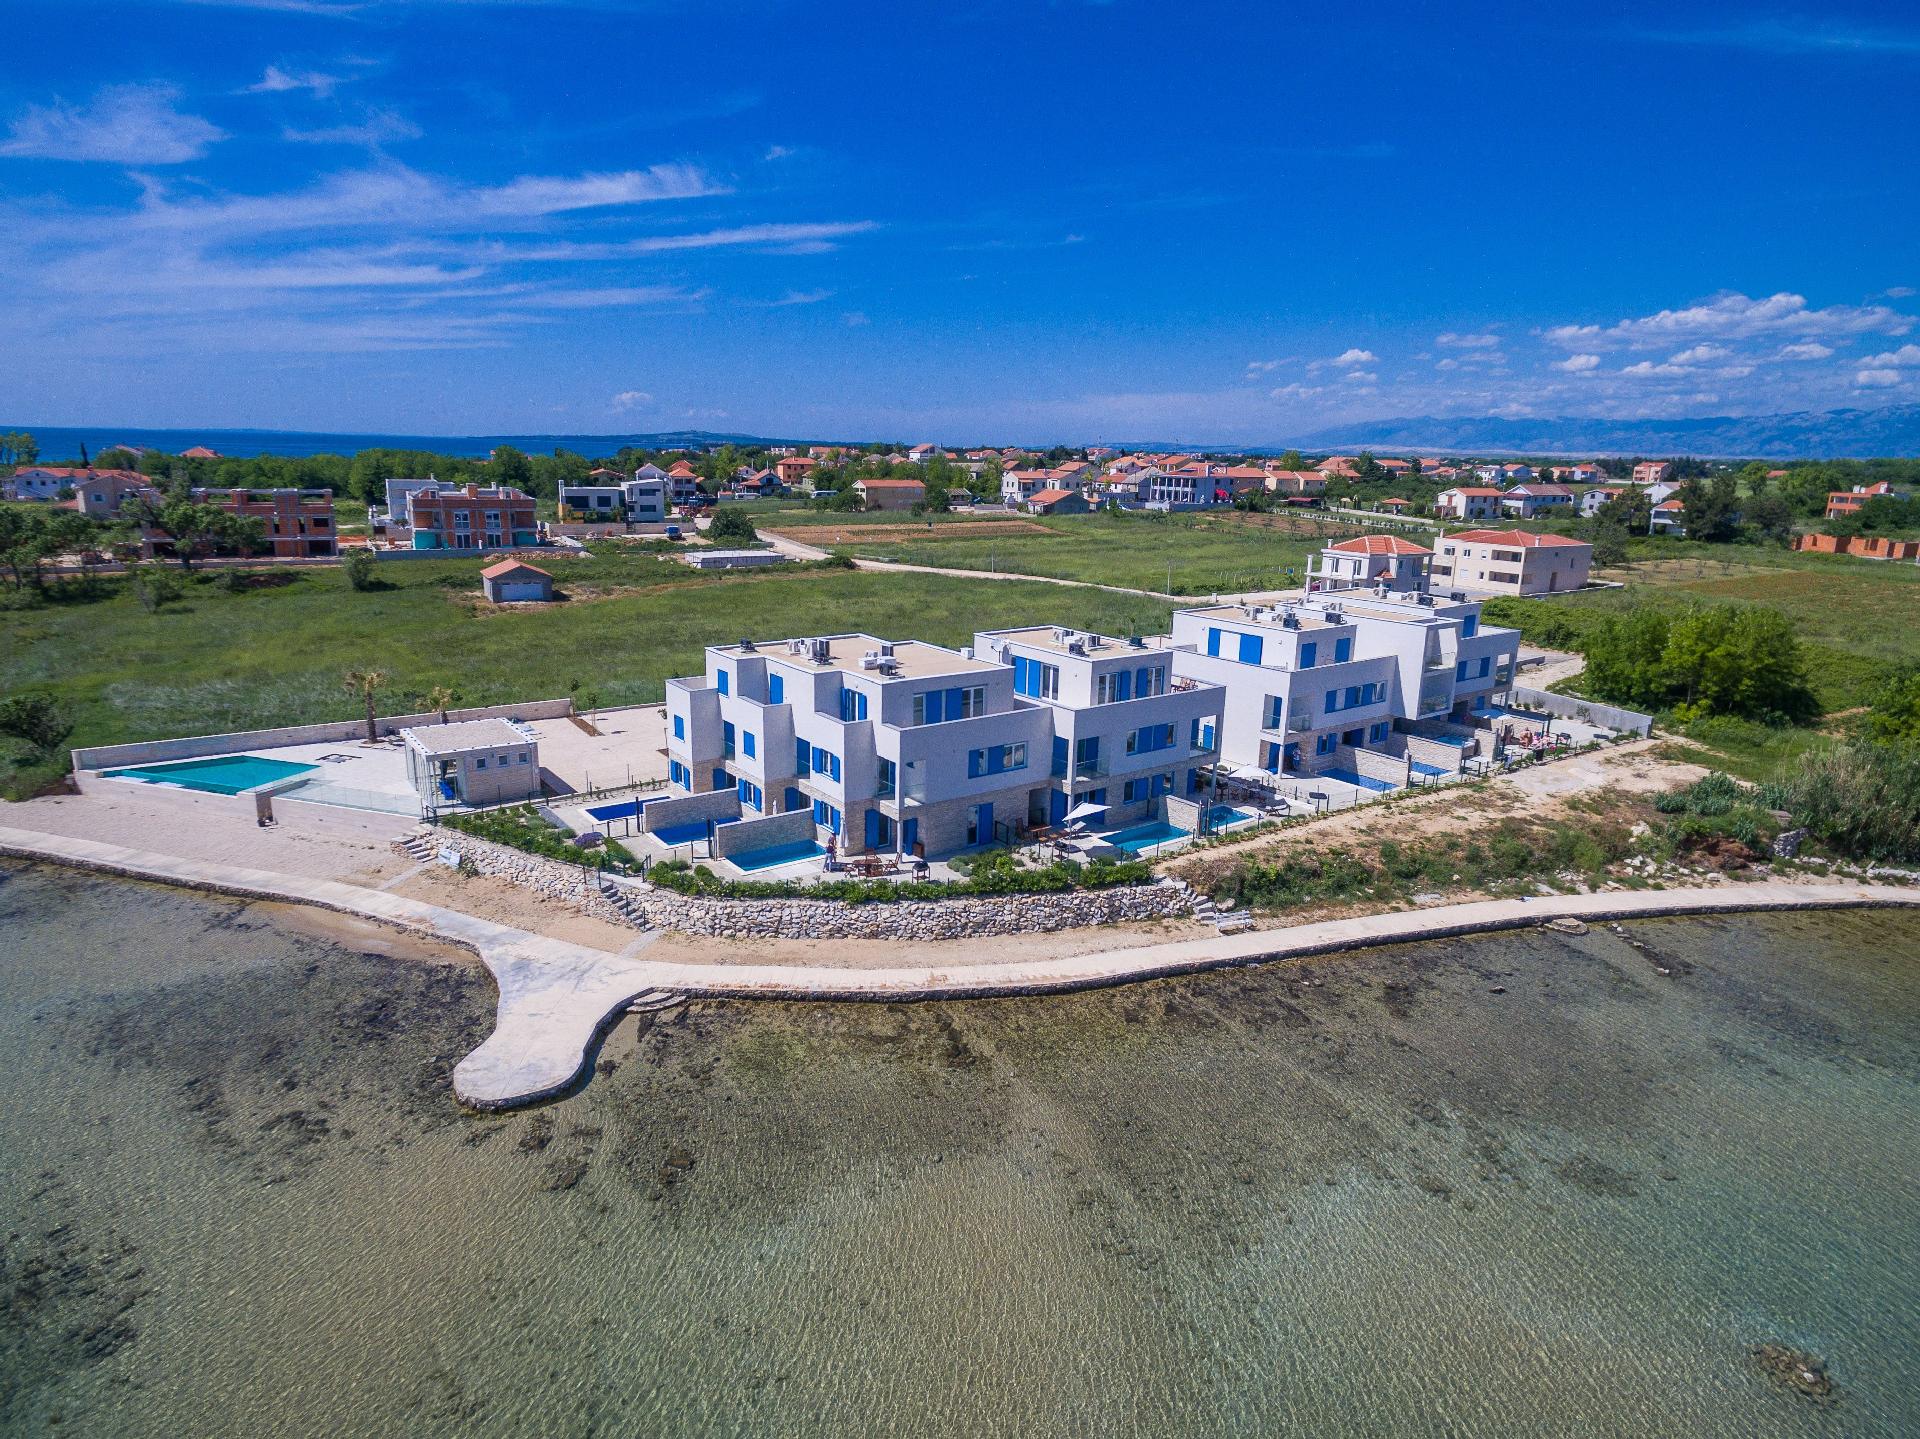 Strandvilla mit beheizbarem Pool und Meerblick, nu Ferienhaus in Dalmatien